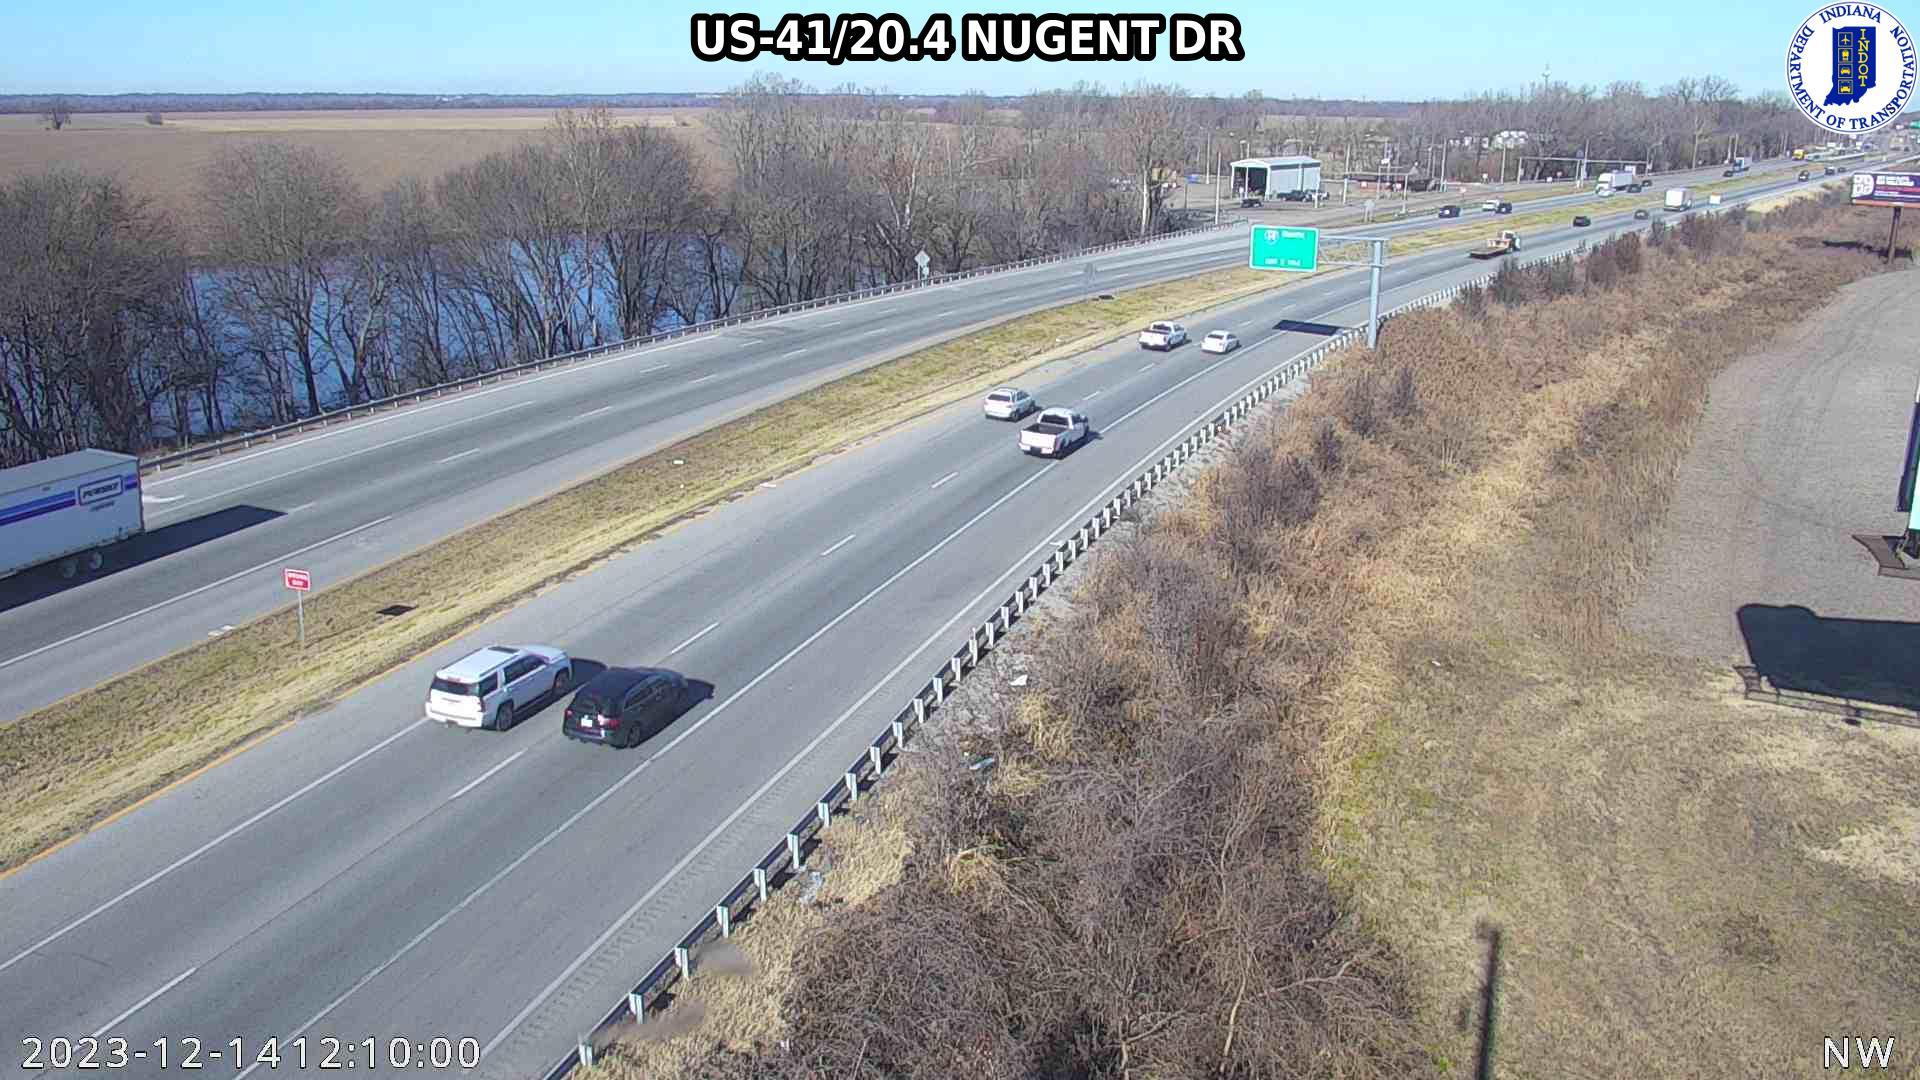 Evansville: US-41: US-41/20.4 NUGENT DR: US-41/20.4 NUGENT DR Traffic Camera